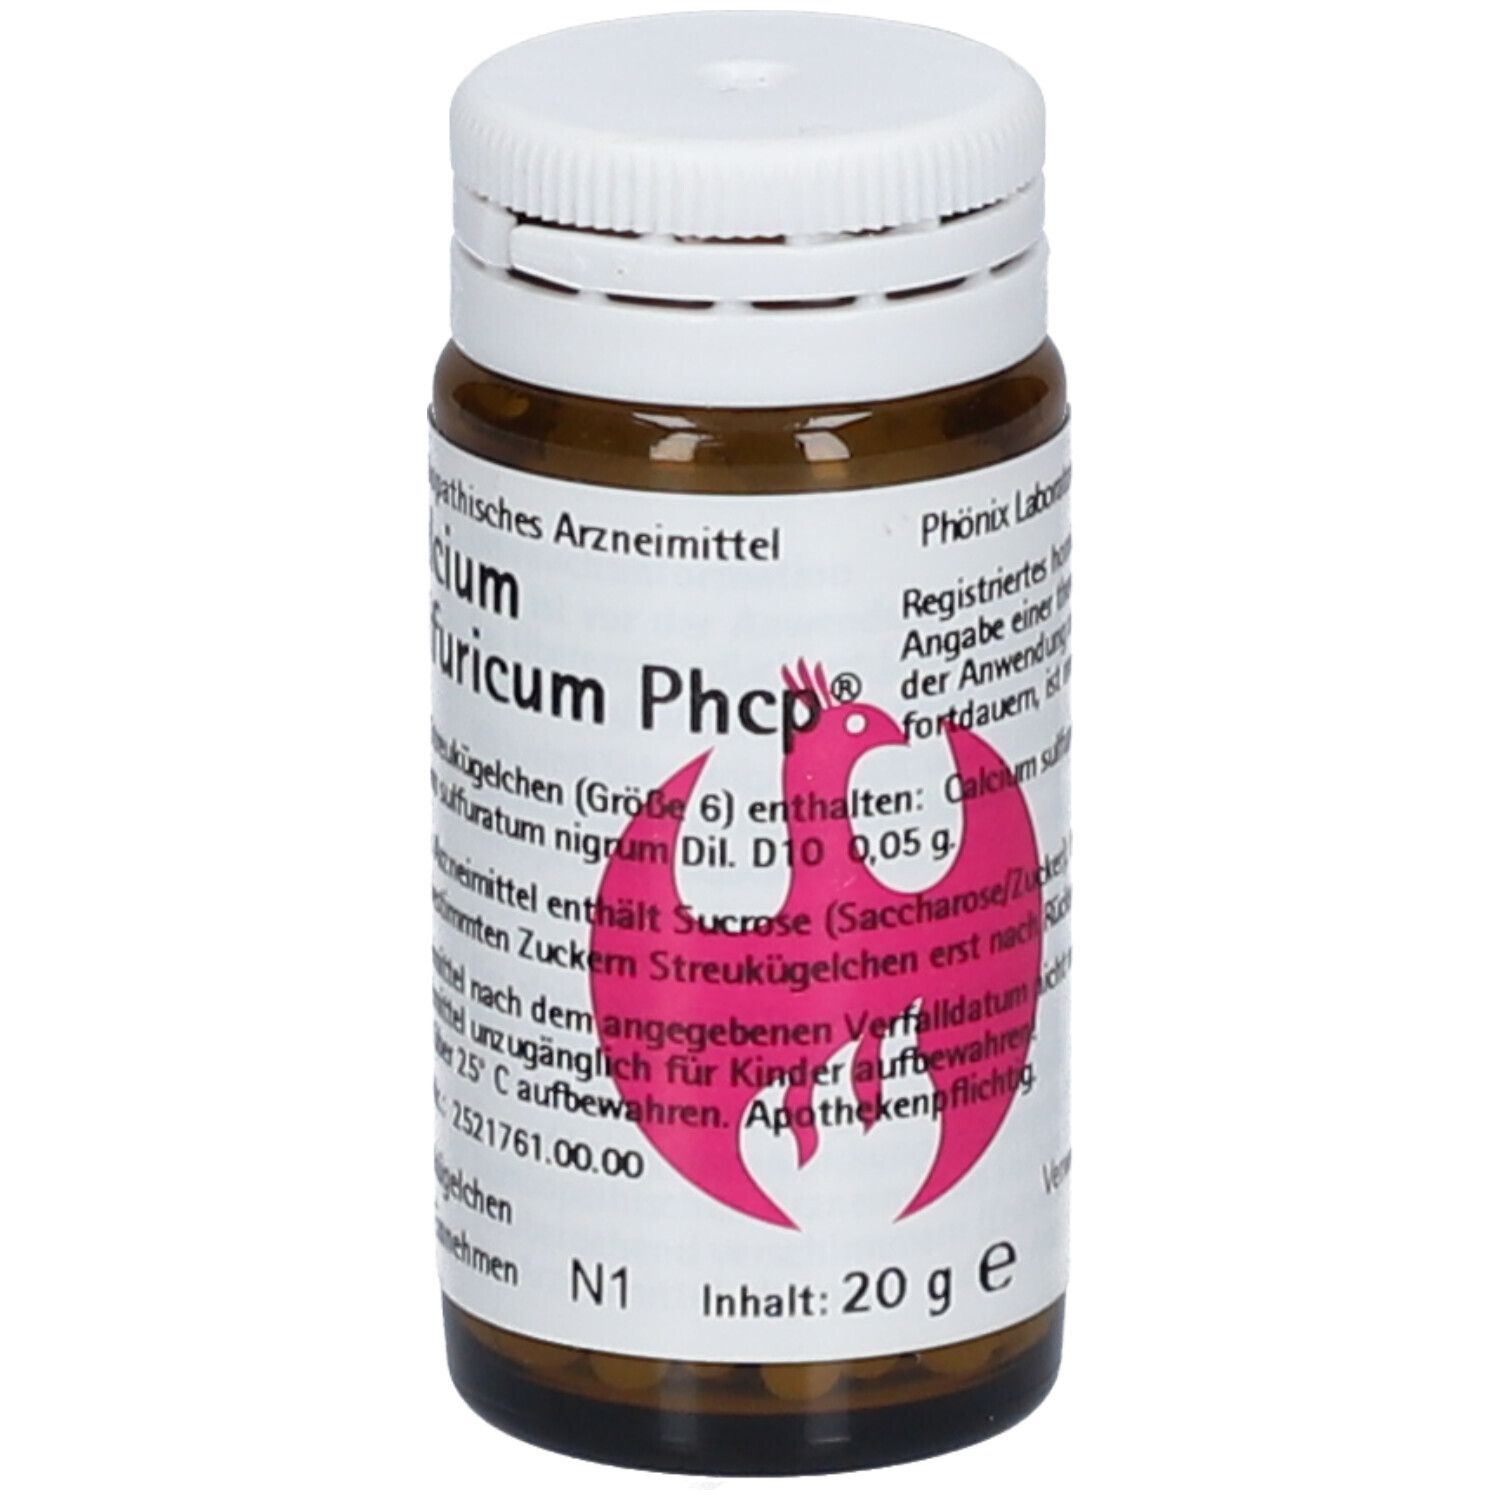 Calcium sulfuricum Phcp®